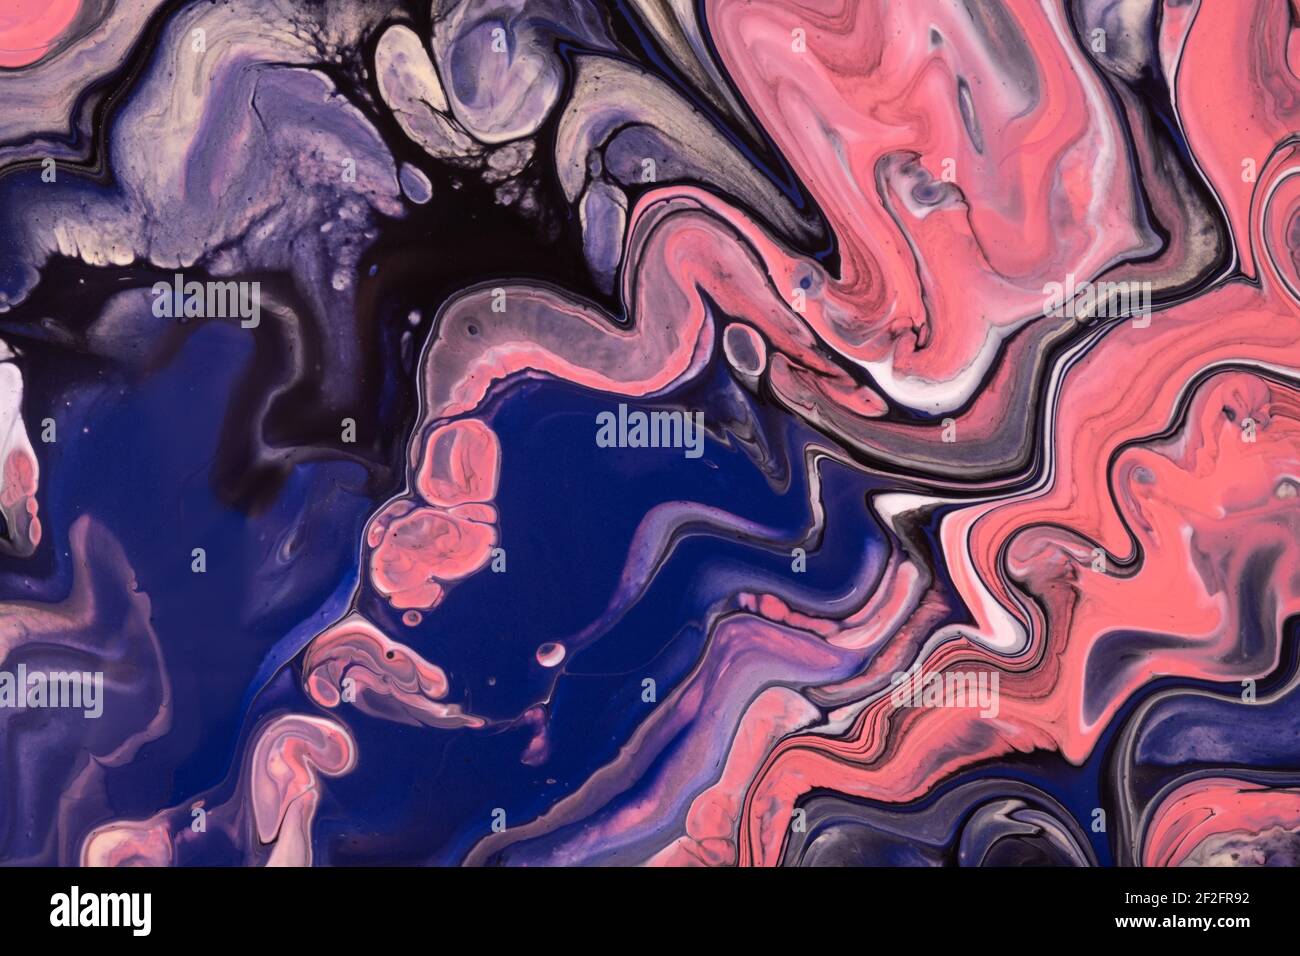 Abstrakte flüssige Kunst Hintergrund marine blau und rot Farben. Flüssige  Acrylmalerei auf Leinwand mit rosa Farbverlauf und Spritzer. Aquarell  Hintergrund mit Welle Stockfotografie - Alamy